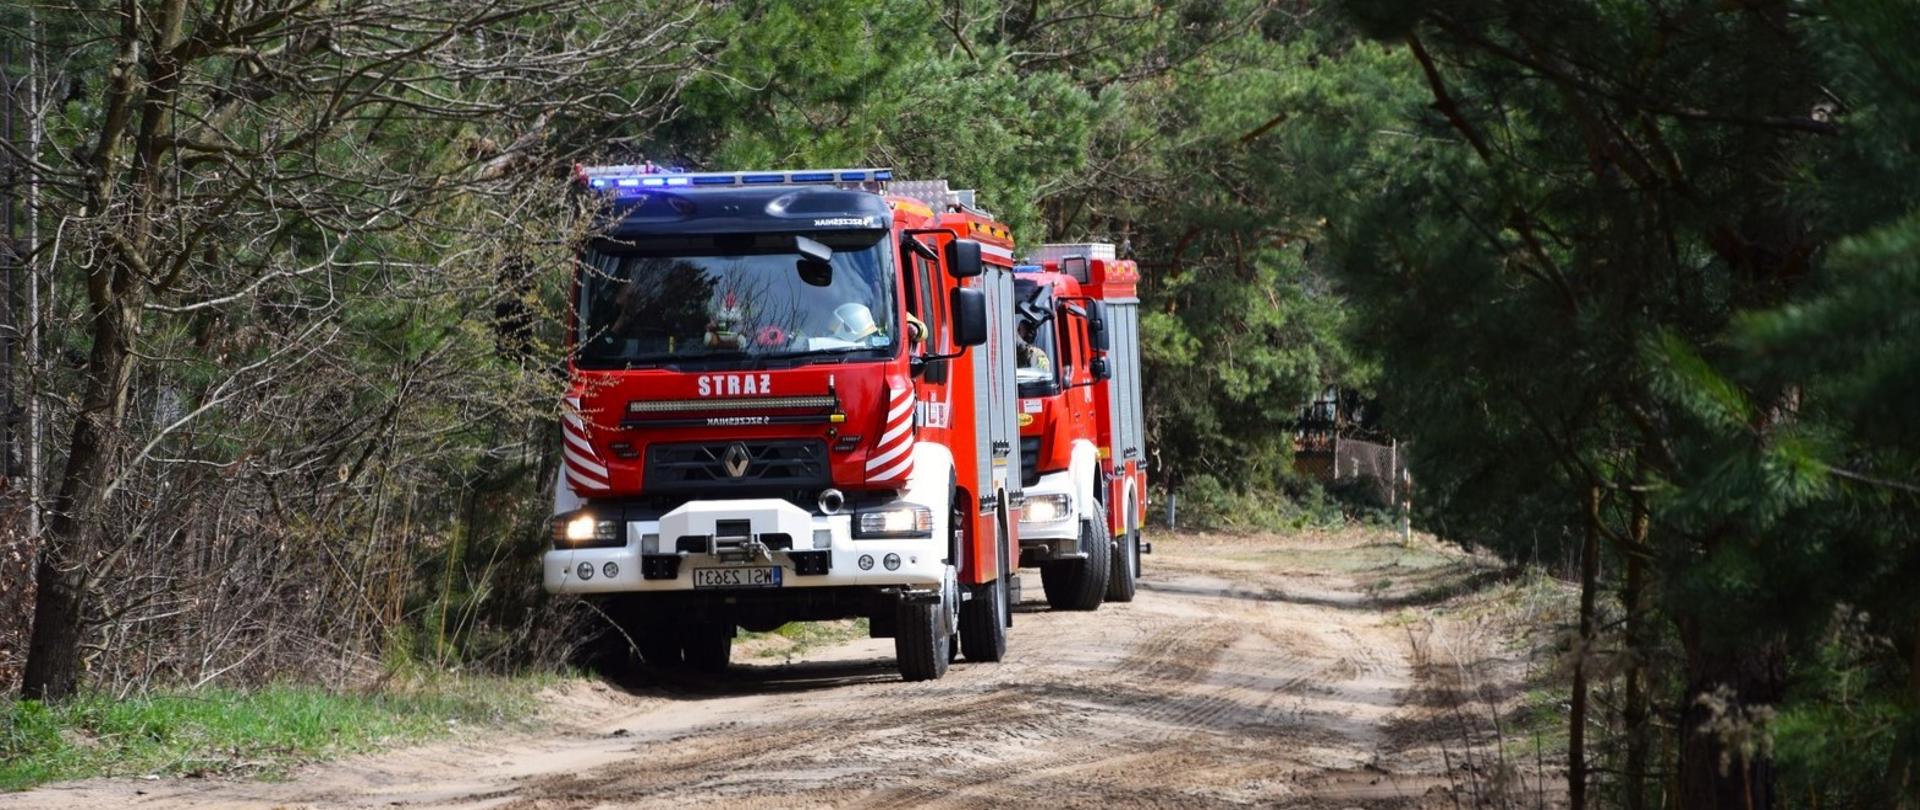 Na zdjęciu widoczne 2 pojazdy pożarnicze w lesie na drodze piaskowej